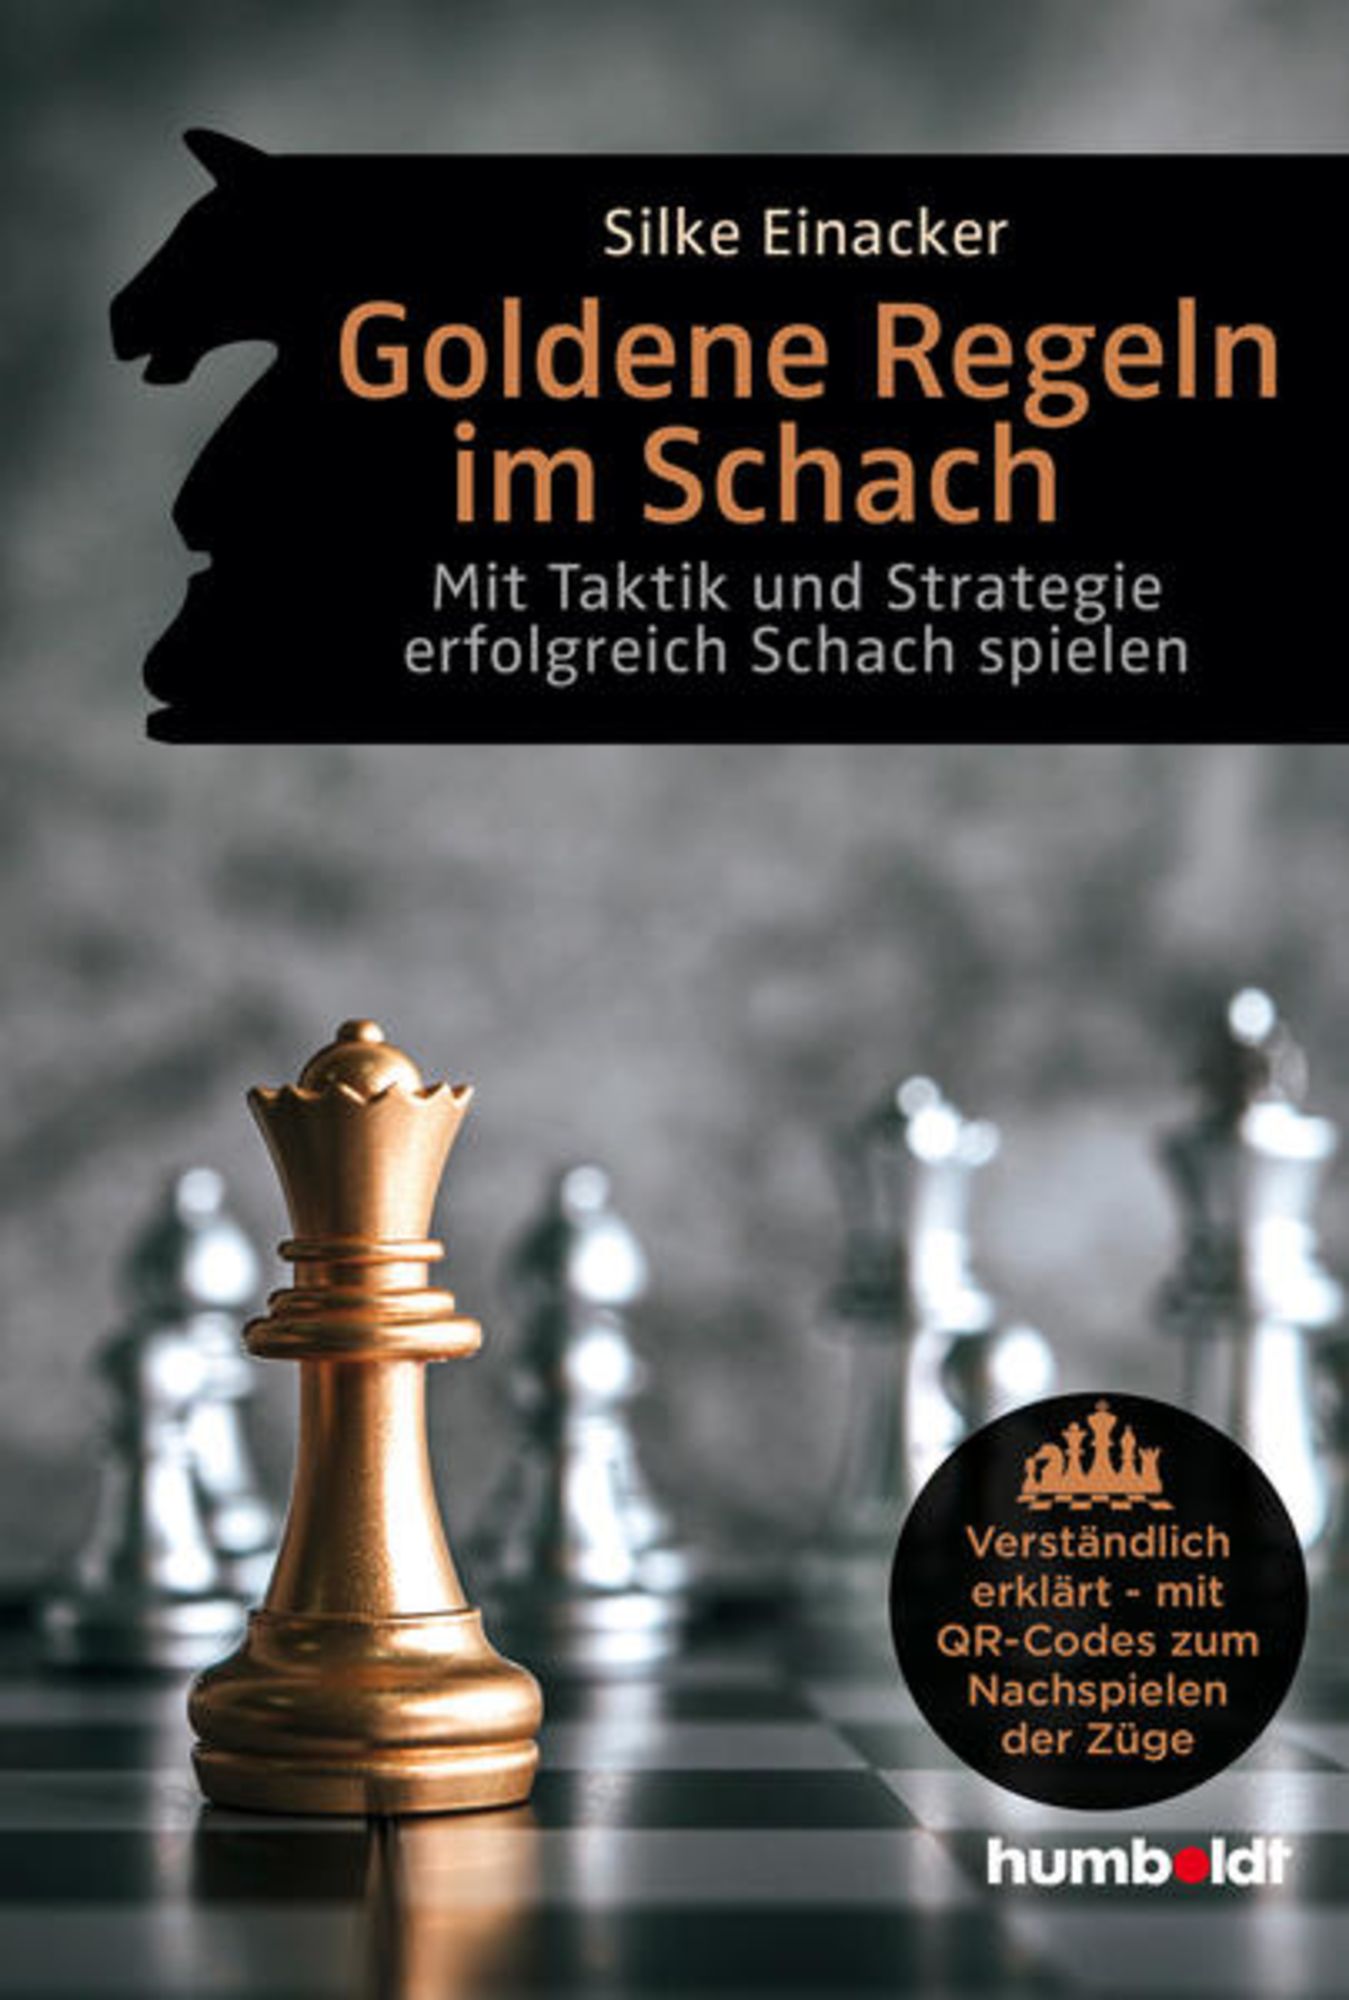 Goldene Regeln im Schach von Silke Einacker - Buch